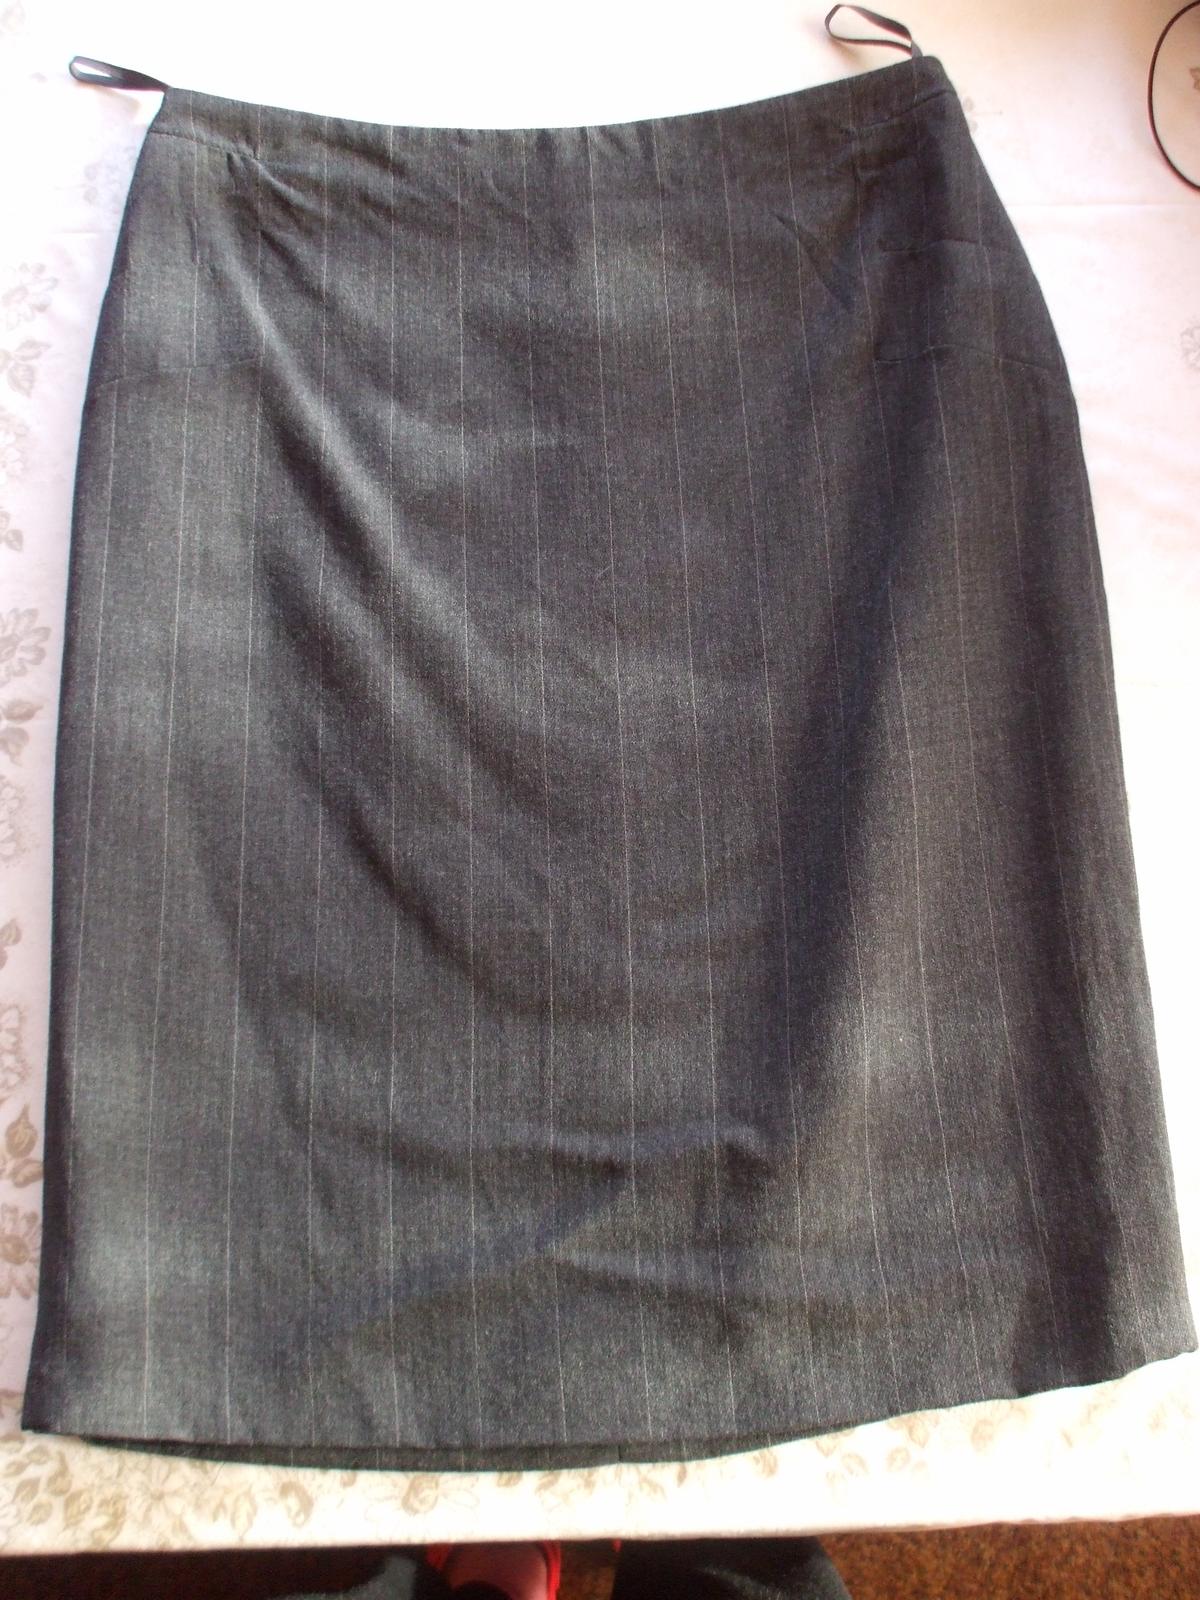 Pouzdrová kostýmková sukně - Obrázek č. 1